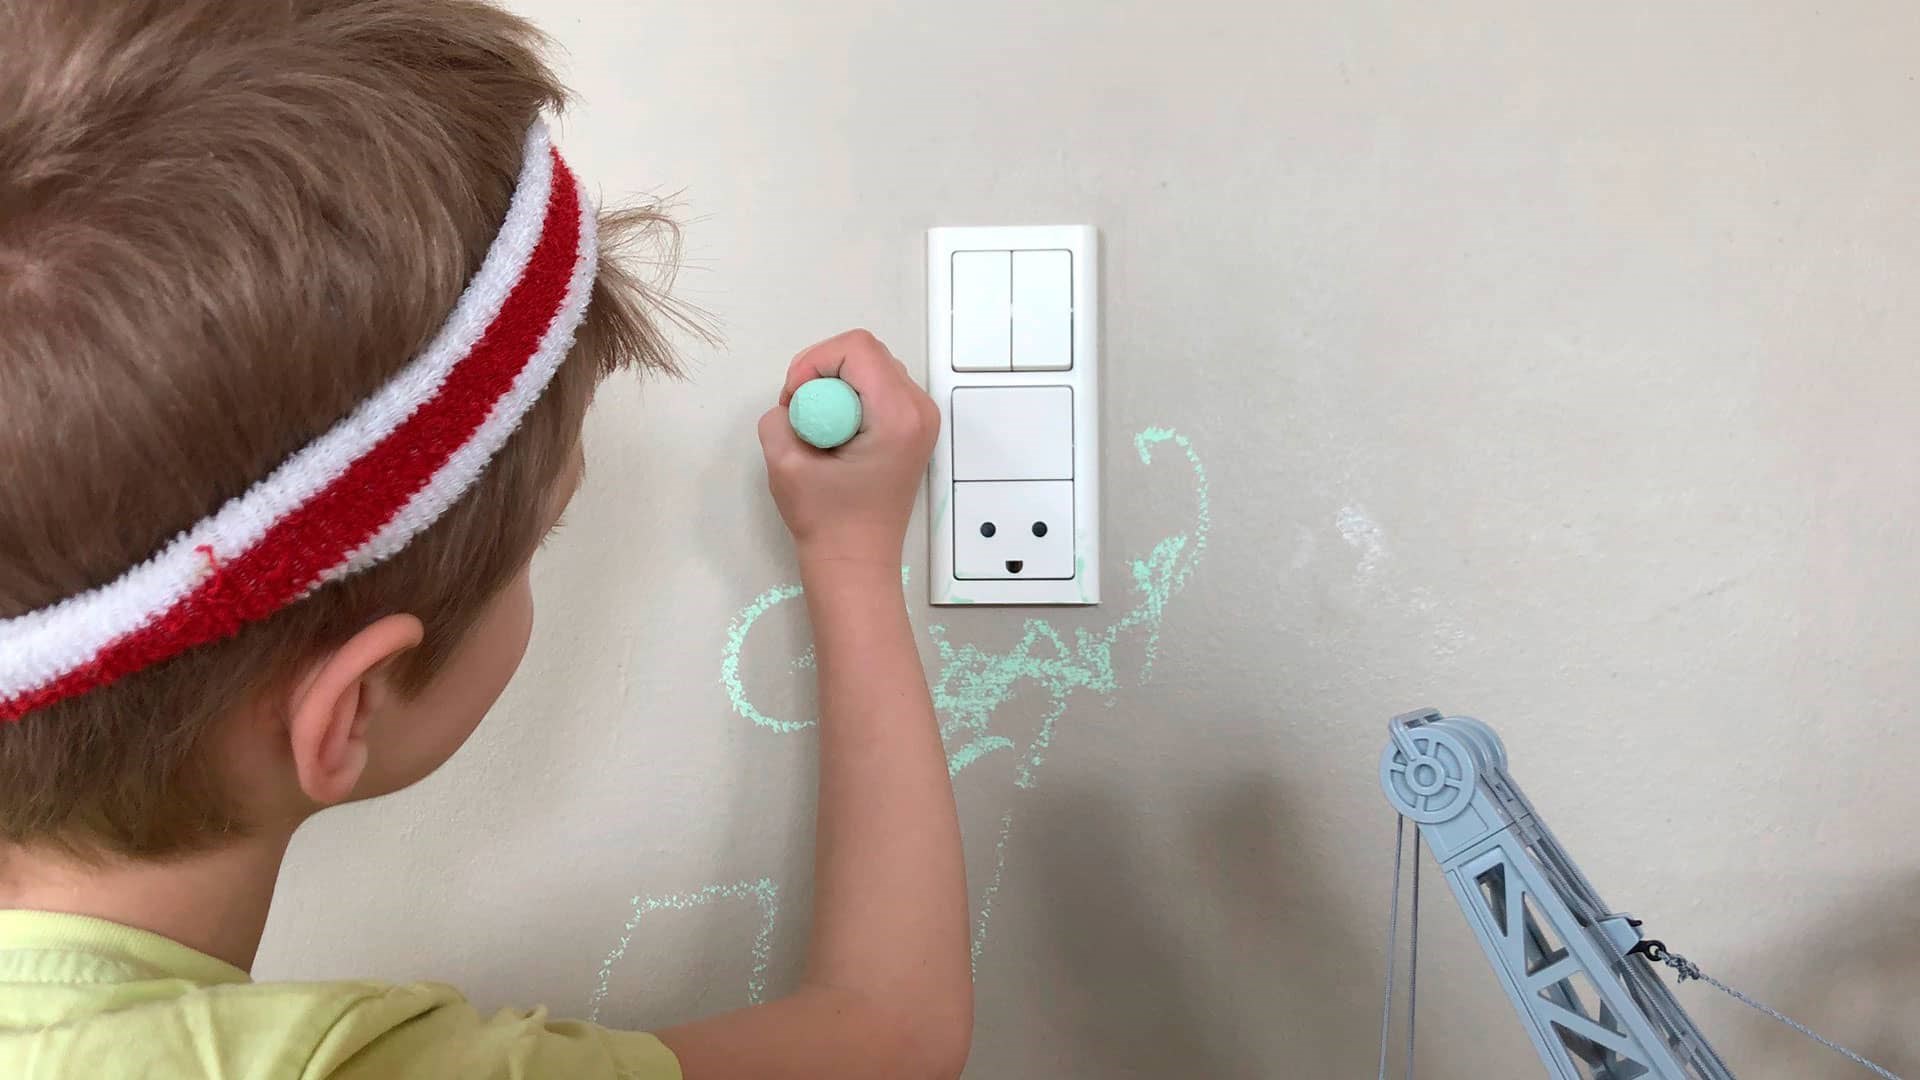 Dreng tegner med grønt kridt på væggen